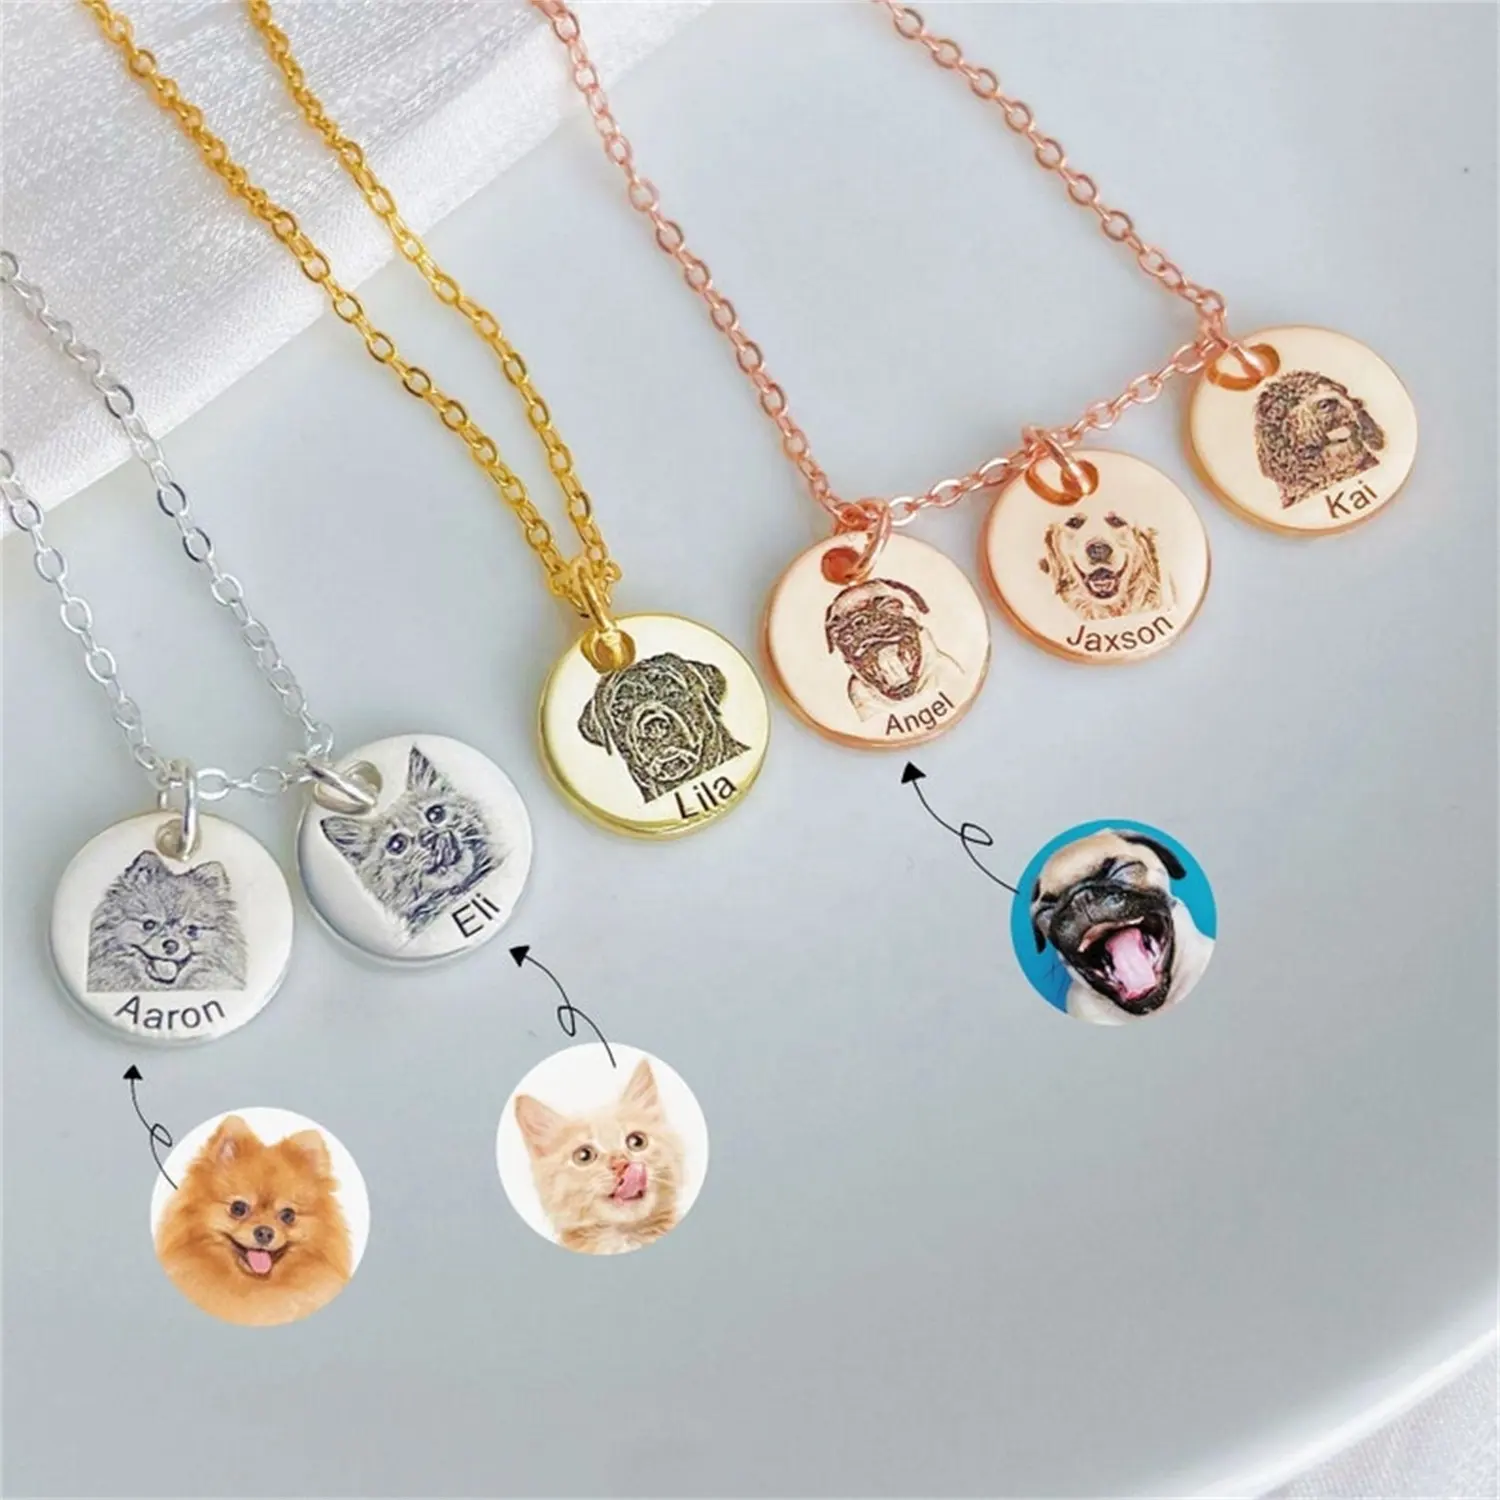 Kat Hond Id Naam Custom Gratis Graveren Gepersonaliseerde Charm Hanger Kettingen Voor Pet Cat Collar Puppy Accessoire Jewel